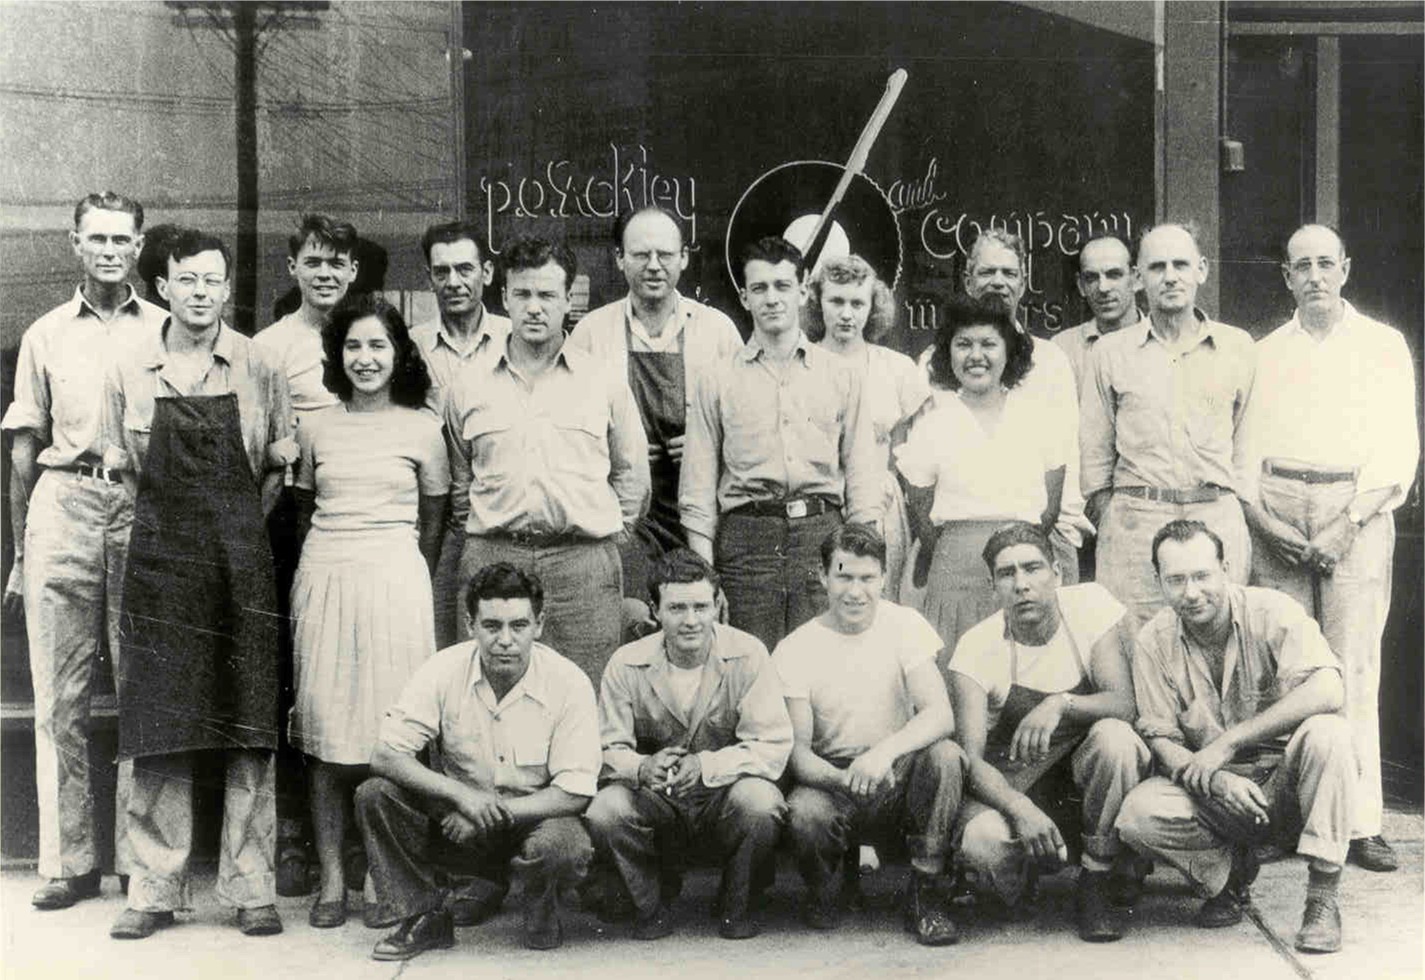 Company Picture circa 1947